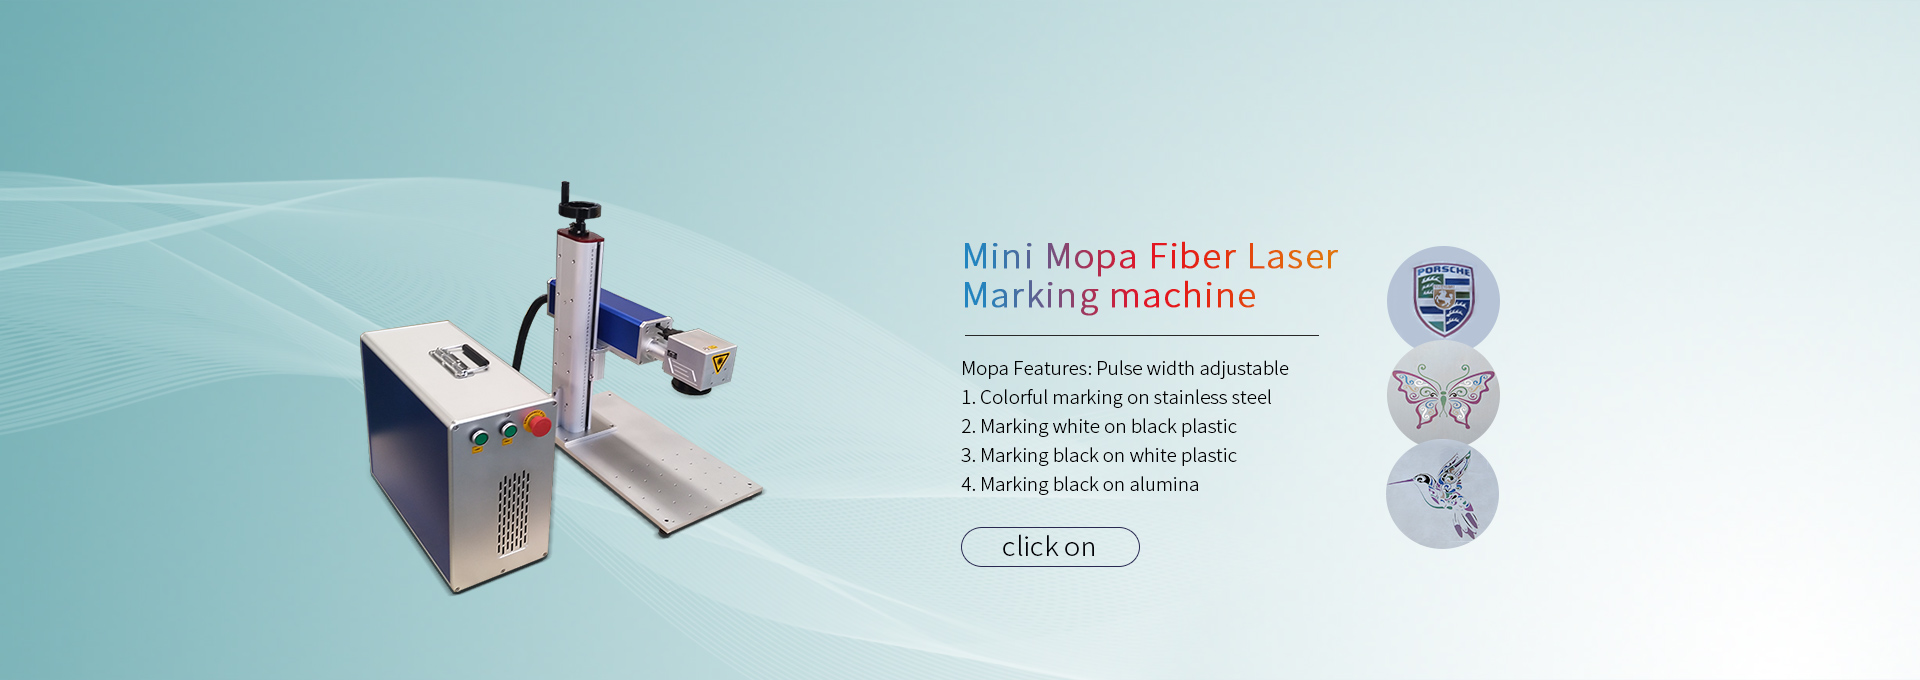 mopa-fiber-laser-marking-machine